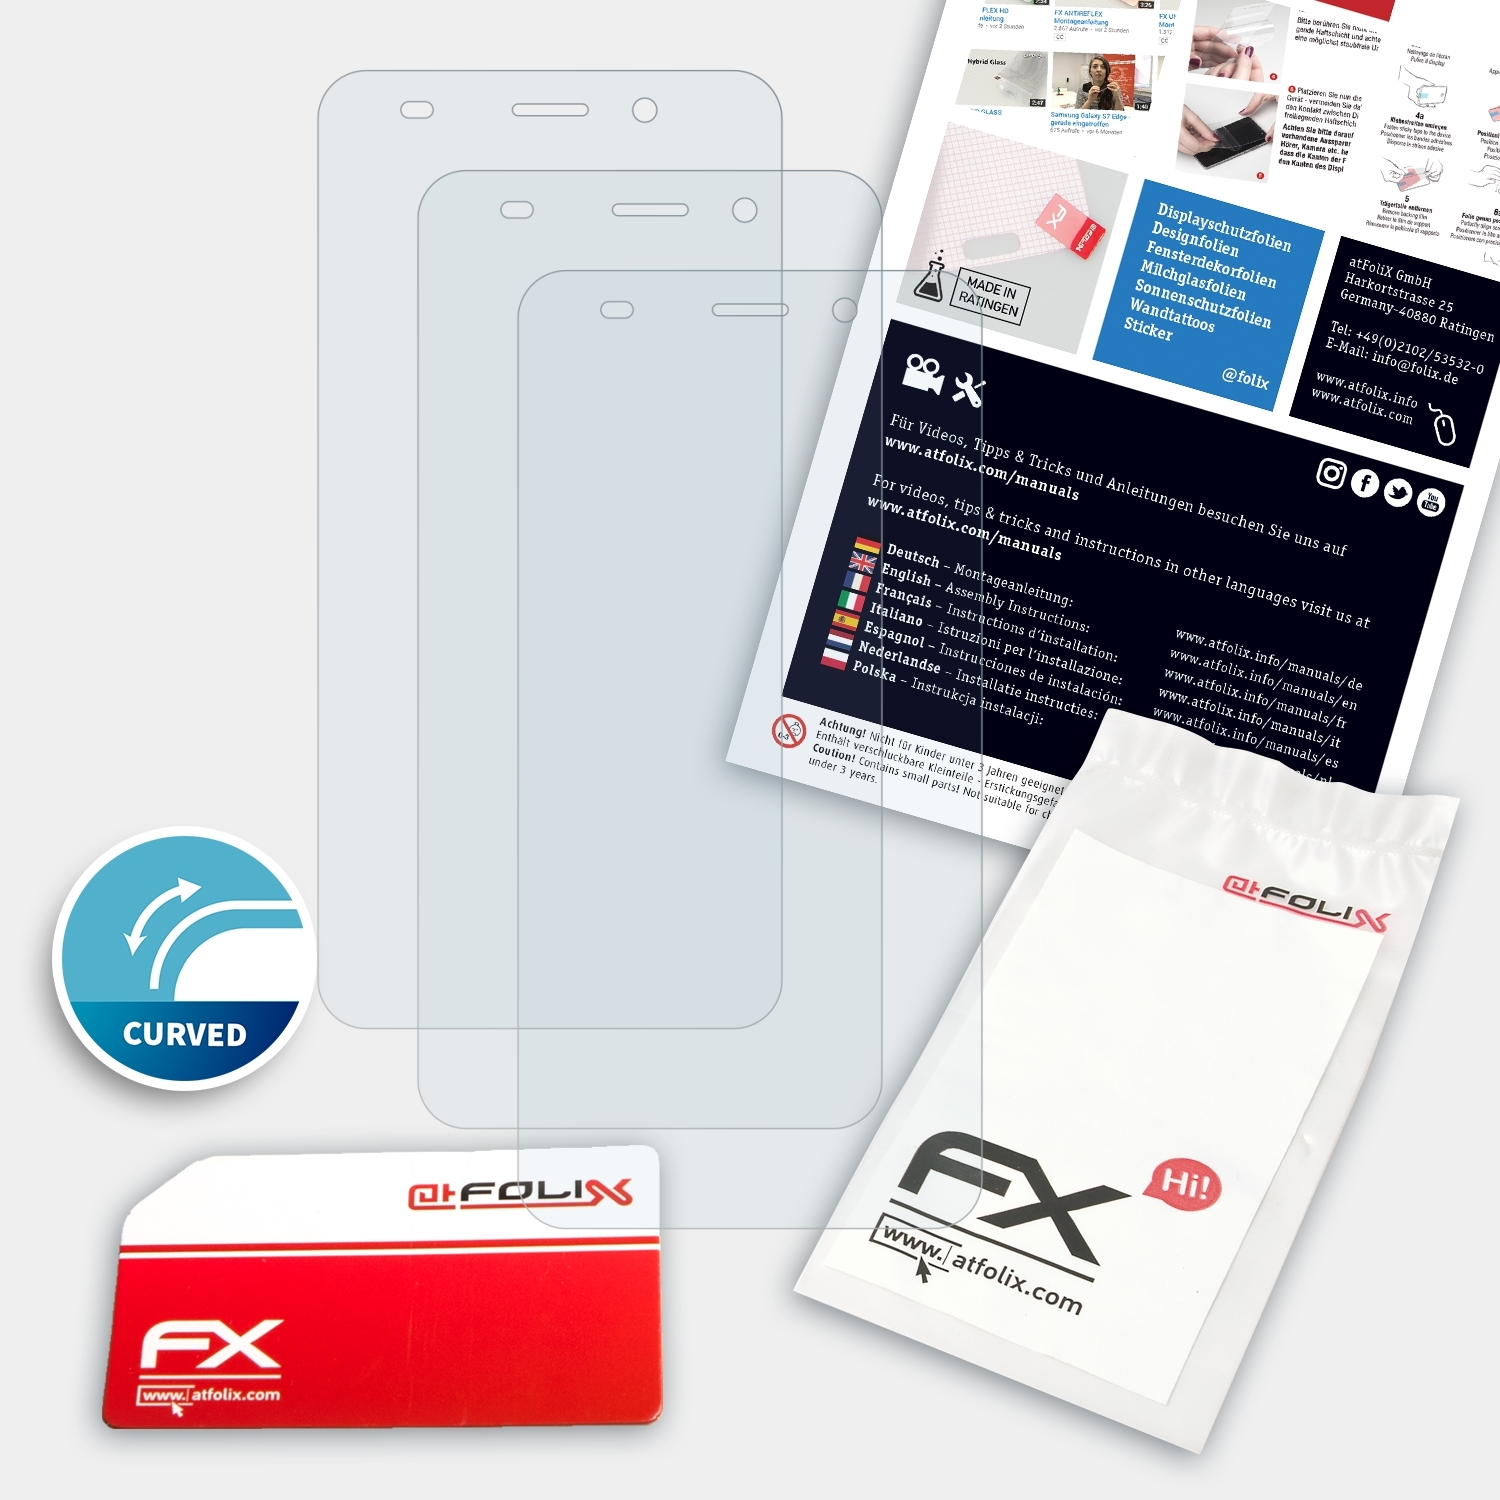 ATFOLIX Displayschutz(für 3x FX-ActiFleX 530) Swisstone SD